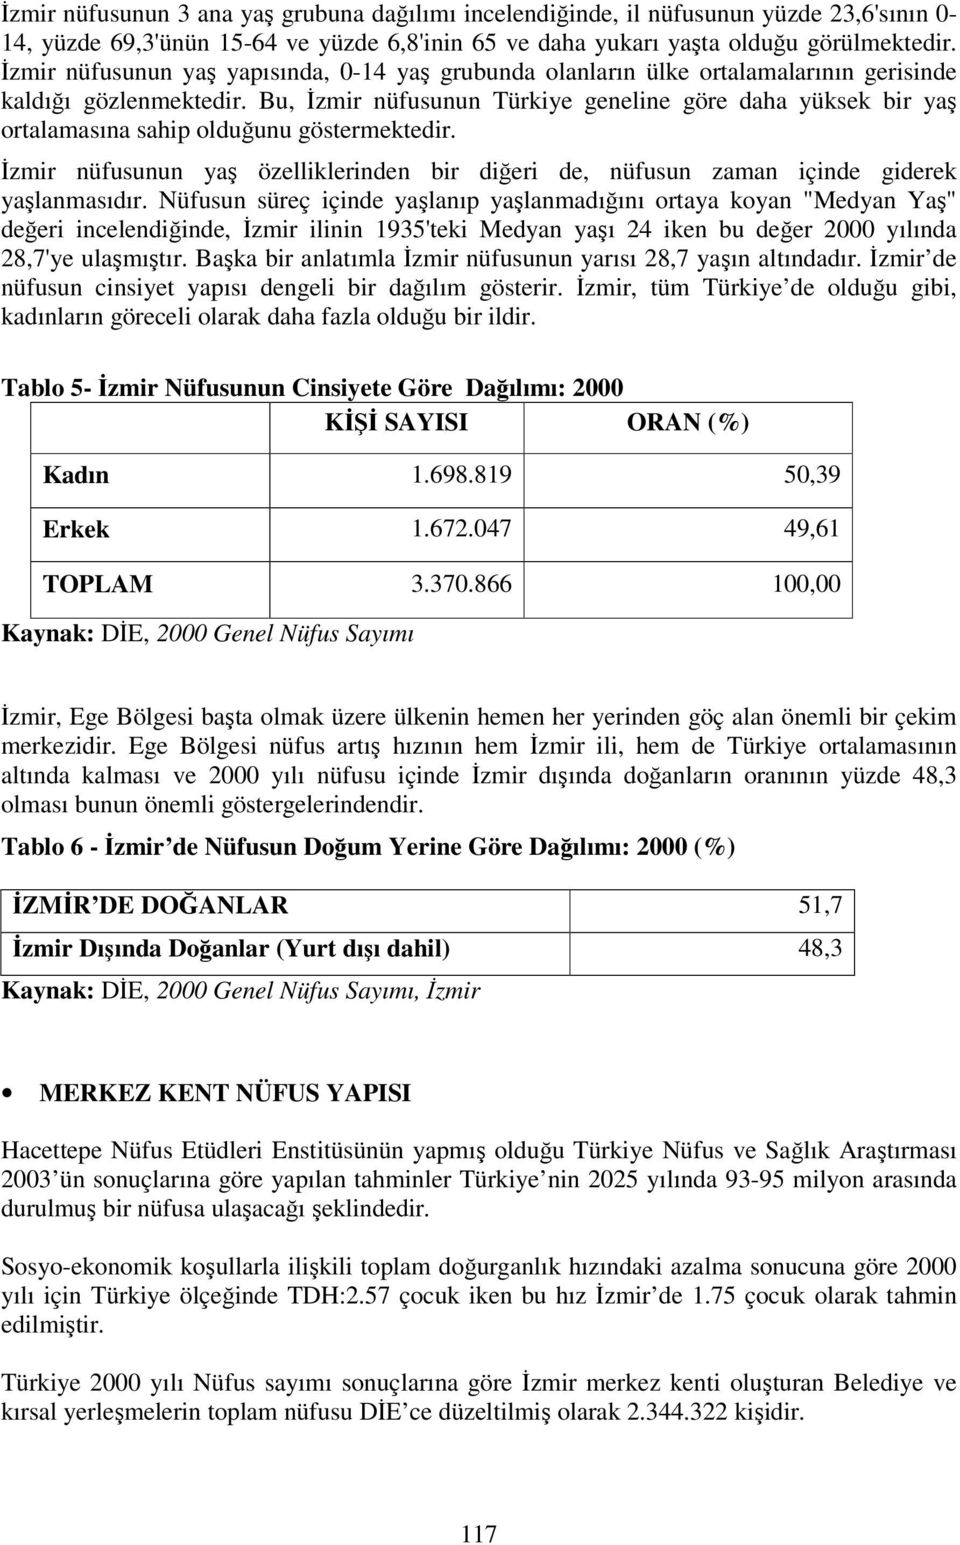 Bu, İzmir nüfusunun Türkiye geneline göre daha yüksek bir yaş ortalamasına sahip olduğunu göstermektedir. İzmir nüfusunun yaş özelliklerinden bir diğeri de, nüfusun zaman içinde giderek yaşlanmasıdır.